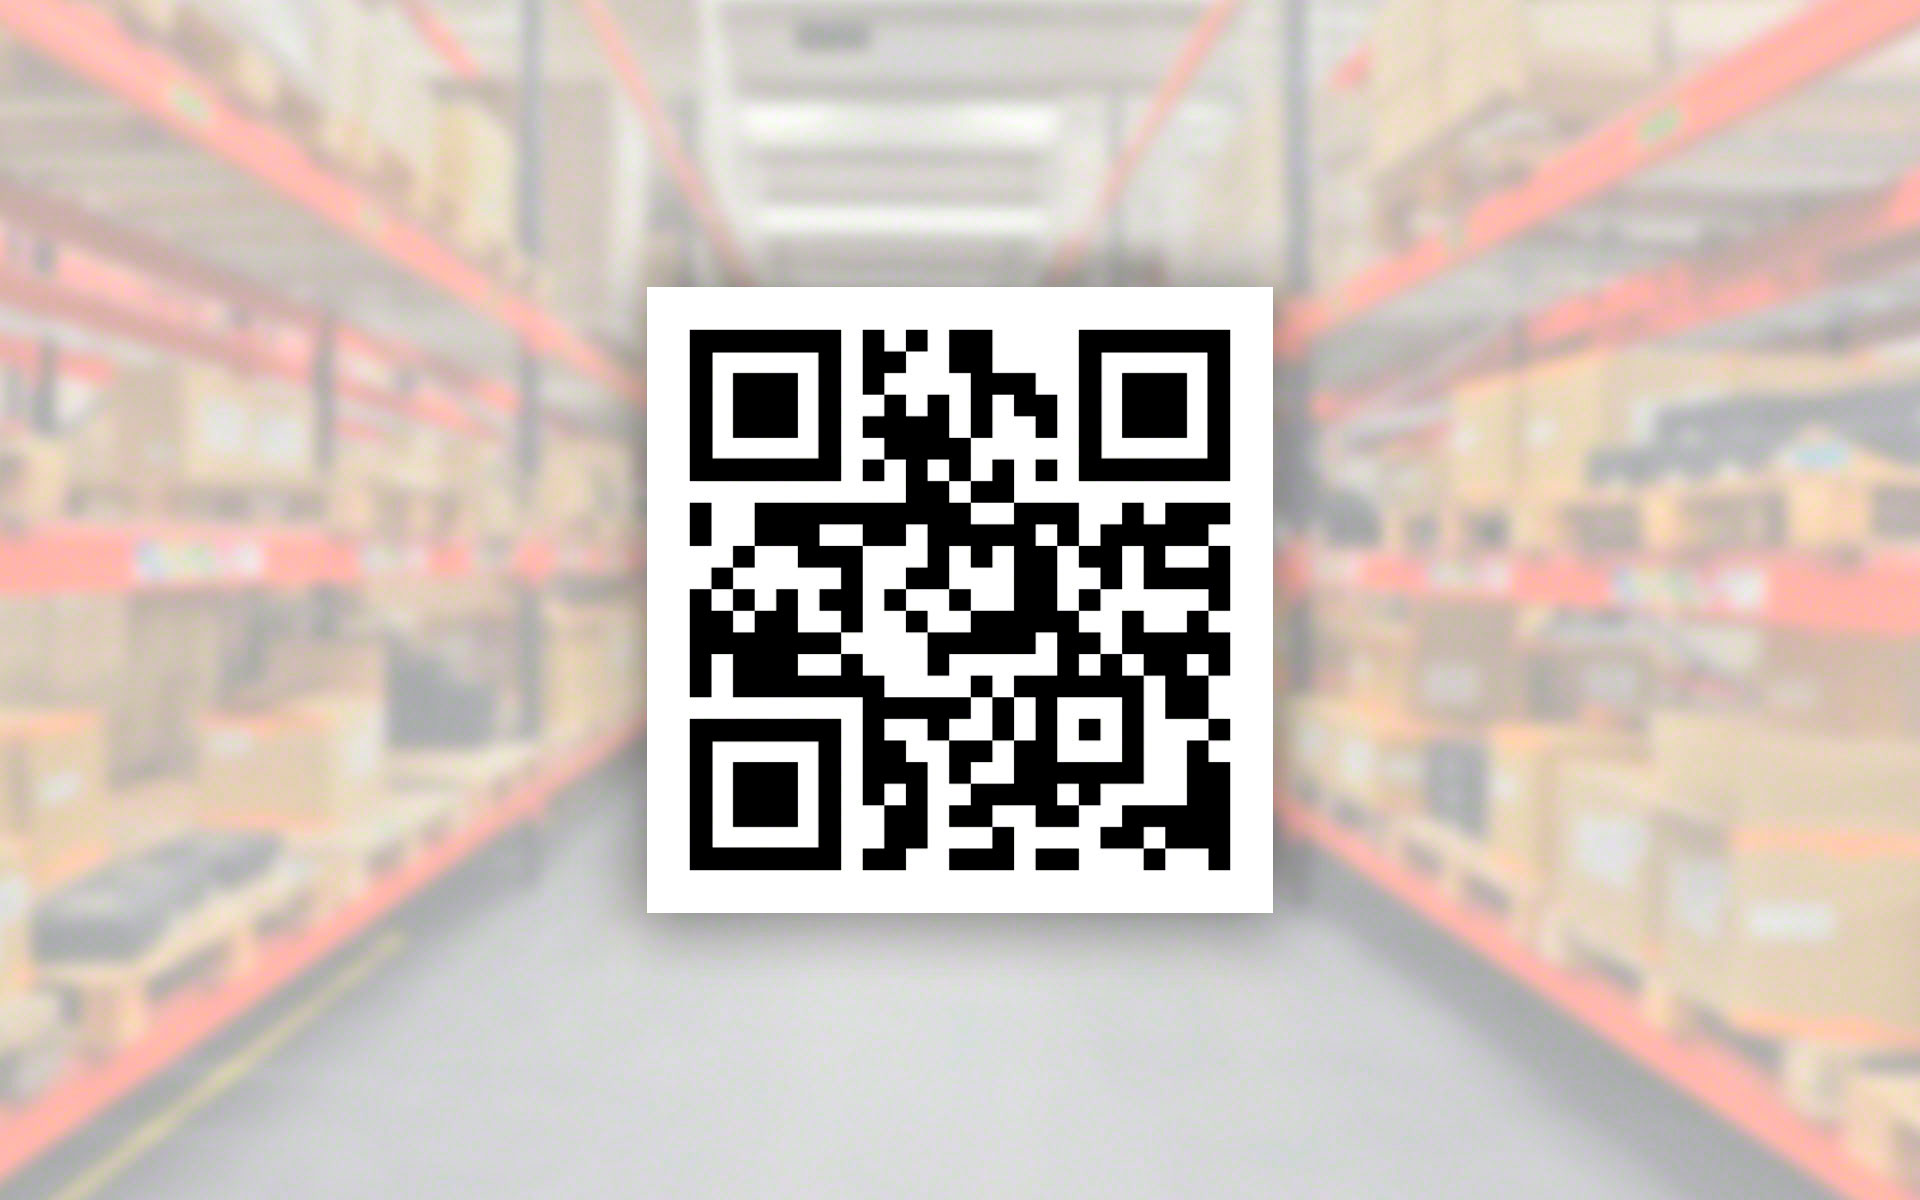 Los códigos QR en logística proporcionan información más detallada sobre los productos que los códigos de barras